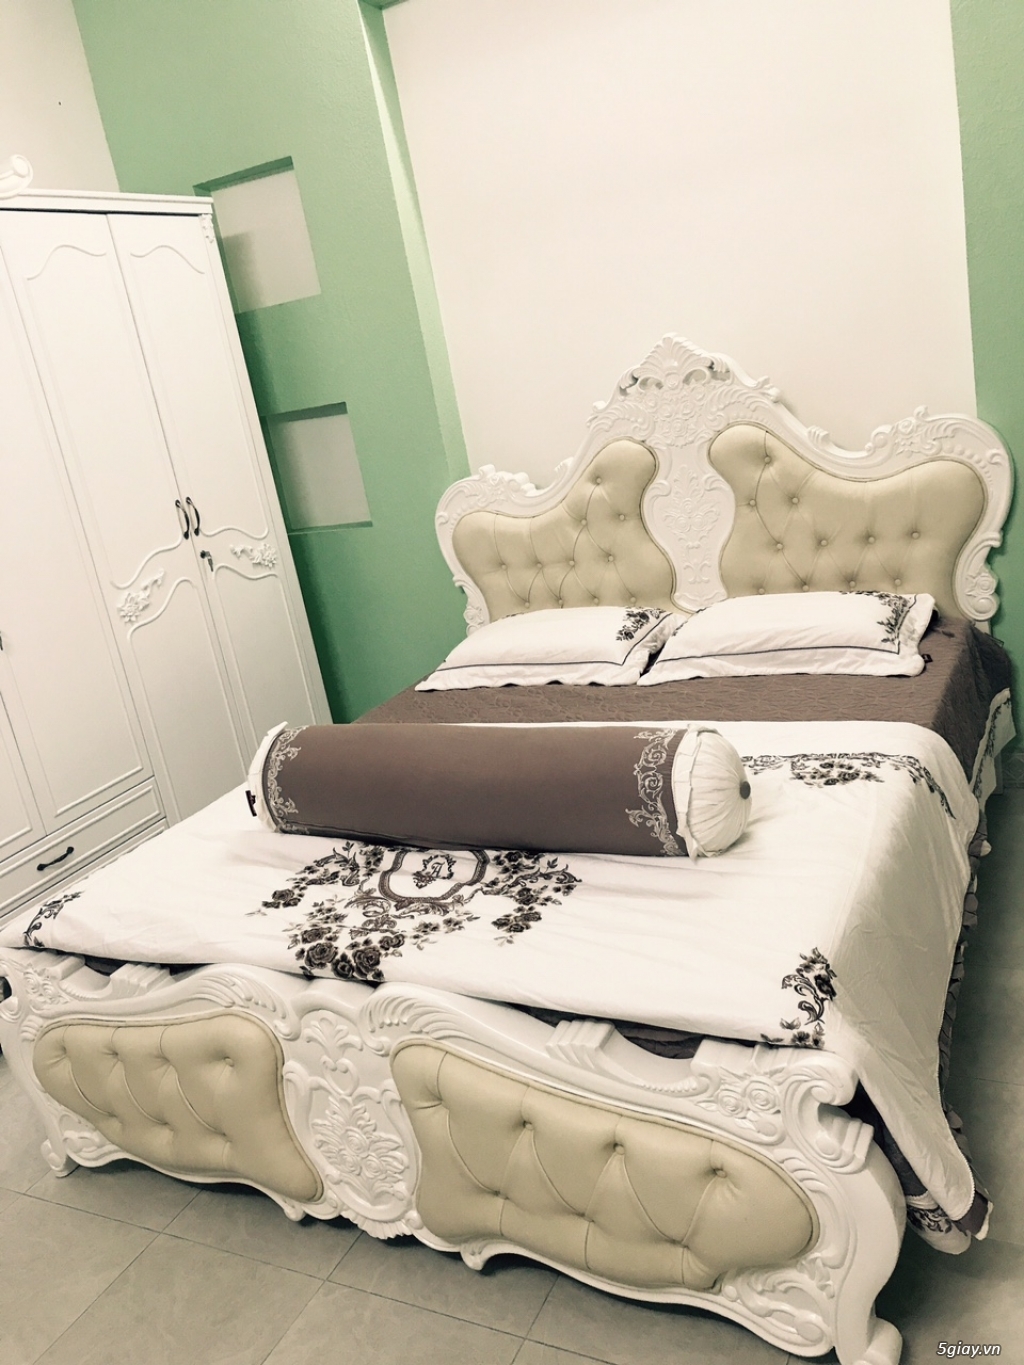 Giường ngủ tân cổ điển đẹp sẽ mang đến cho căn phòng của bạn một không gian đầy cảm hứng và thú vị. Với sự phối hợp tinh tế giữa các chất liệu như gỗ, kim loại, nệm và vải, giường ngủ tân cổ điển đẹp tạo nên một trong những thiết kế thanh lịch và độc đáo. Với nhiều lựa chọn về kích thước, kiểu dáng và màu sắc, bạn sẽ không còn phải lo lắng về việc tìm kiếm một chiếc giường phù hợp cho phòng ngủ của mình. Hãy xem hình ảnh để tìm ra sản phẩm đẹp nhất cho căn phòng của bạn.